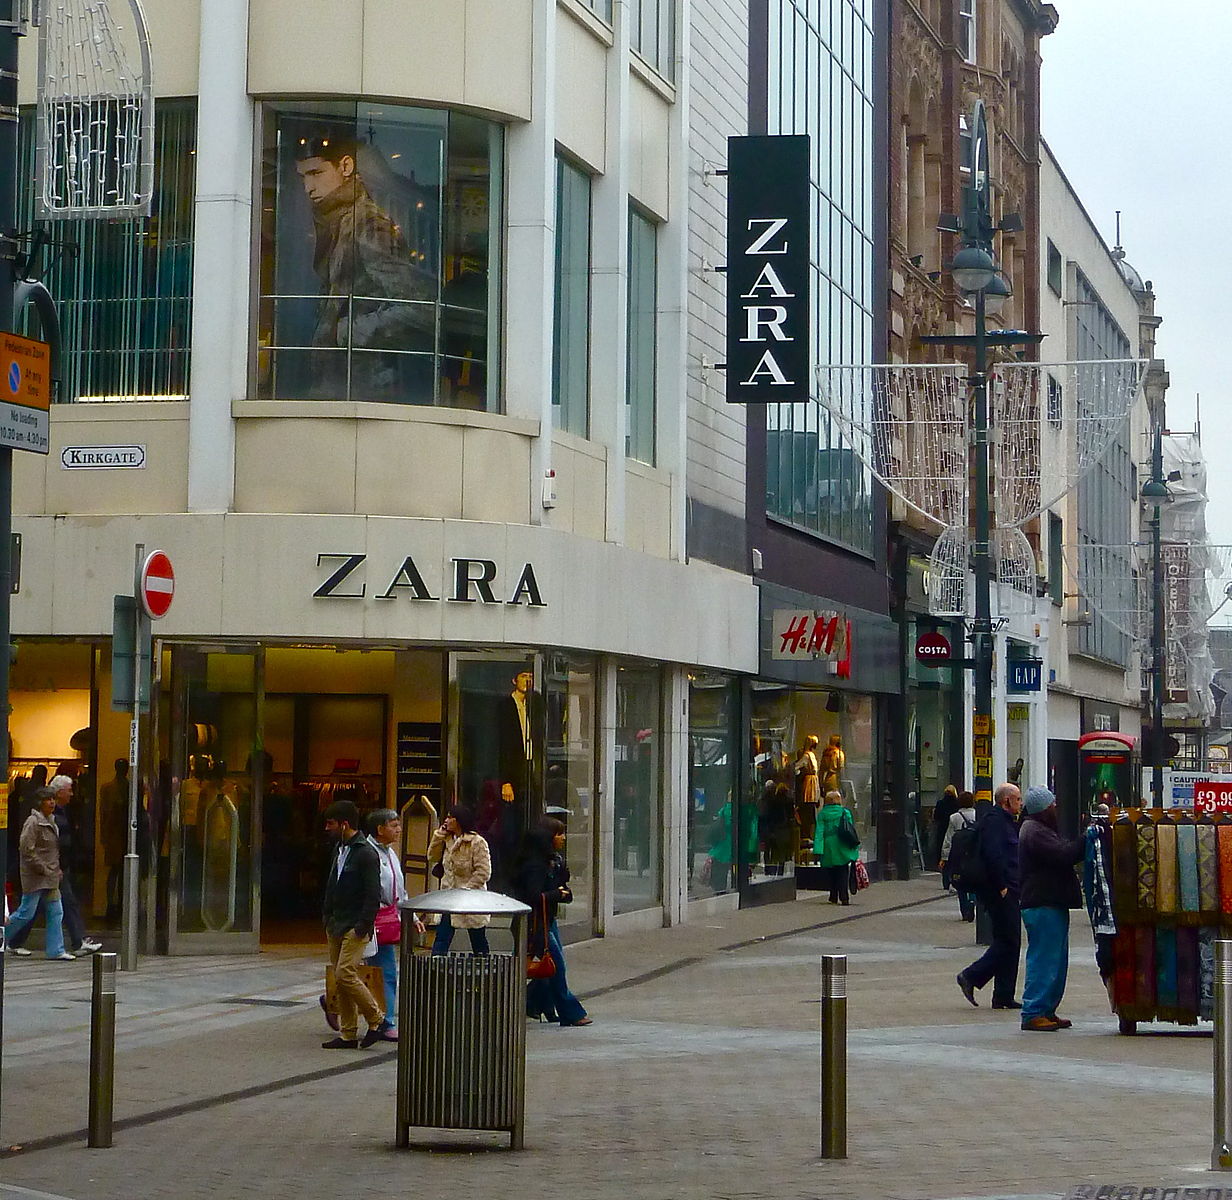 Zara in Leeds. 